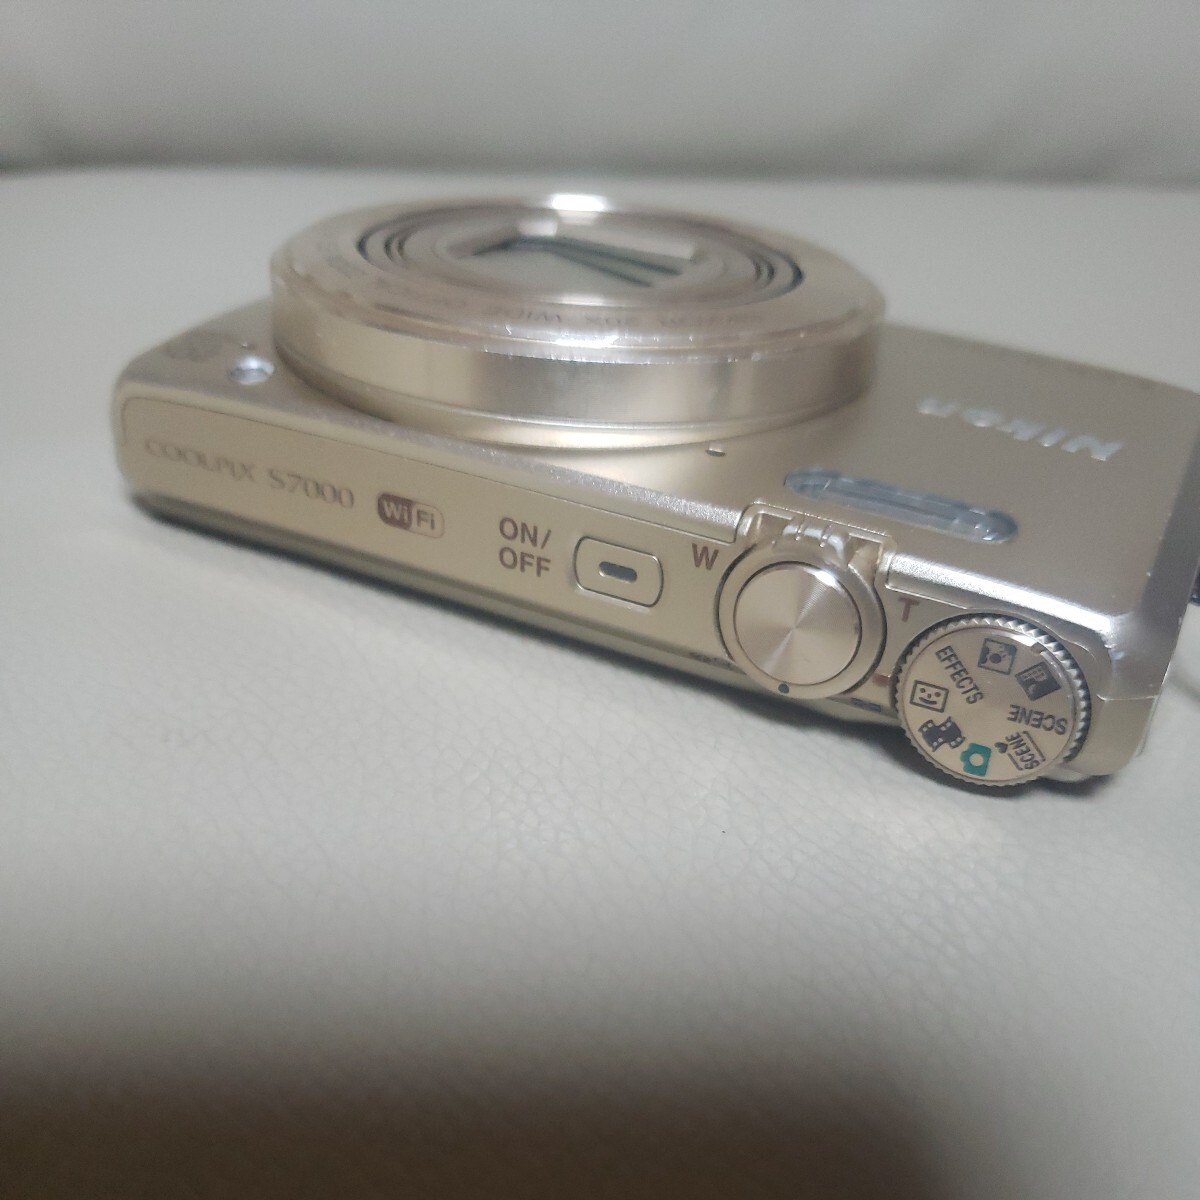 ニコンCOOLPIX.S7000デジタルコンパクトカメラ.ゴールドカラー。の画像4